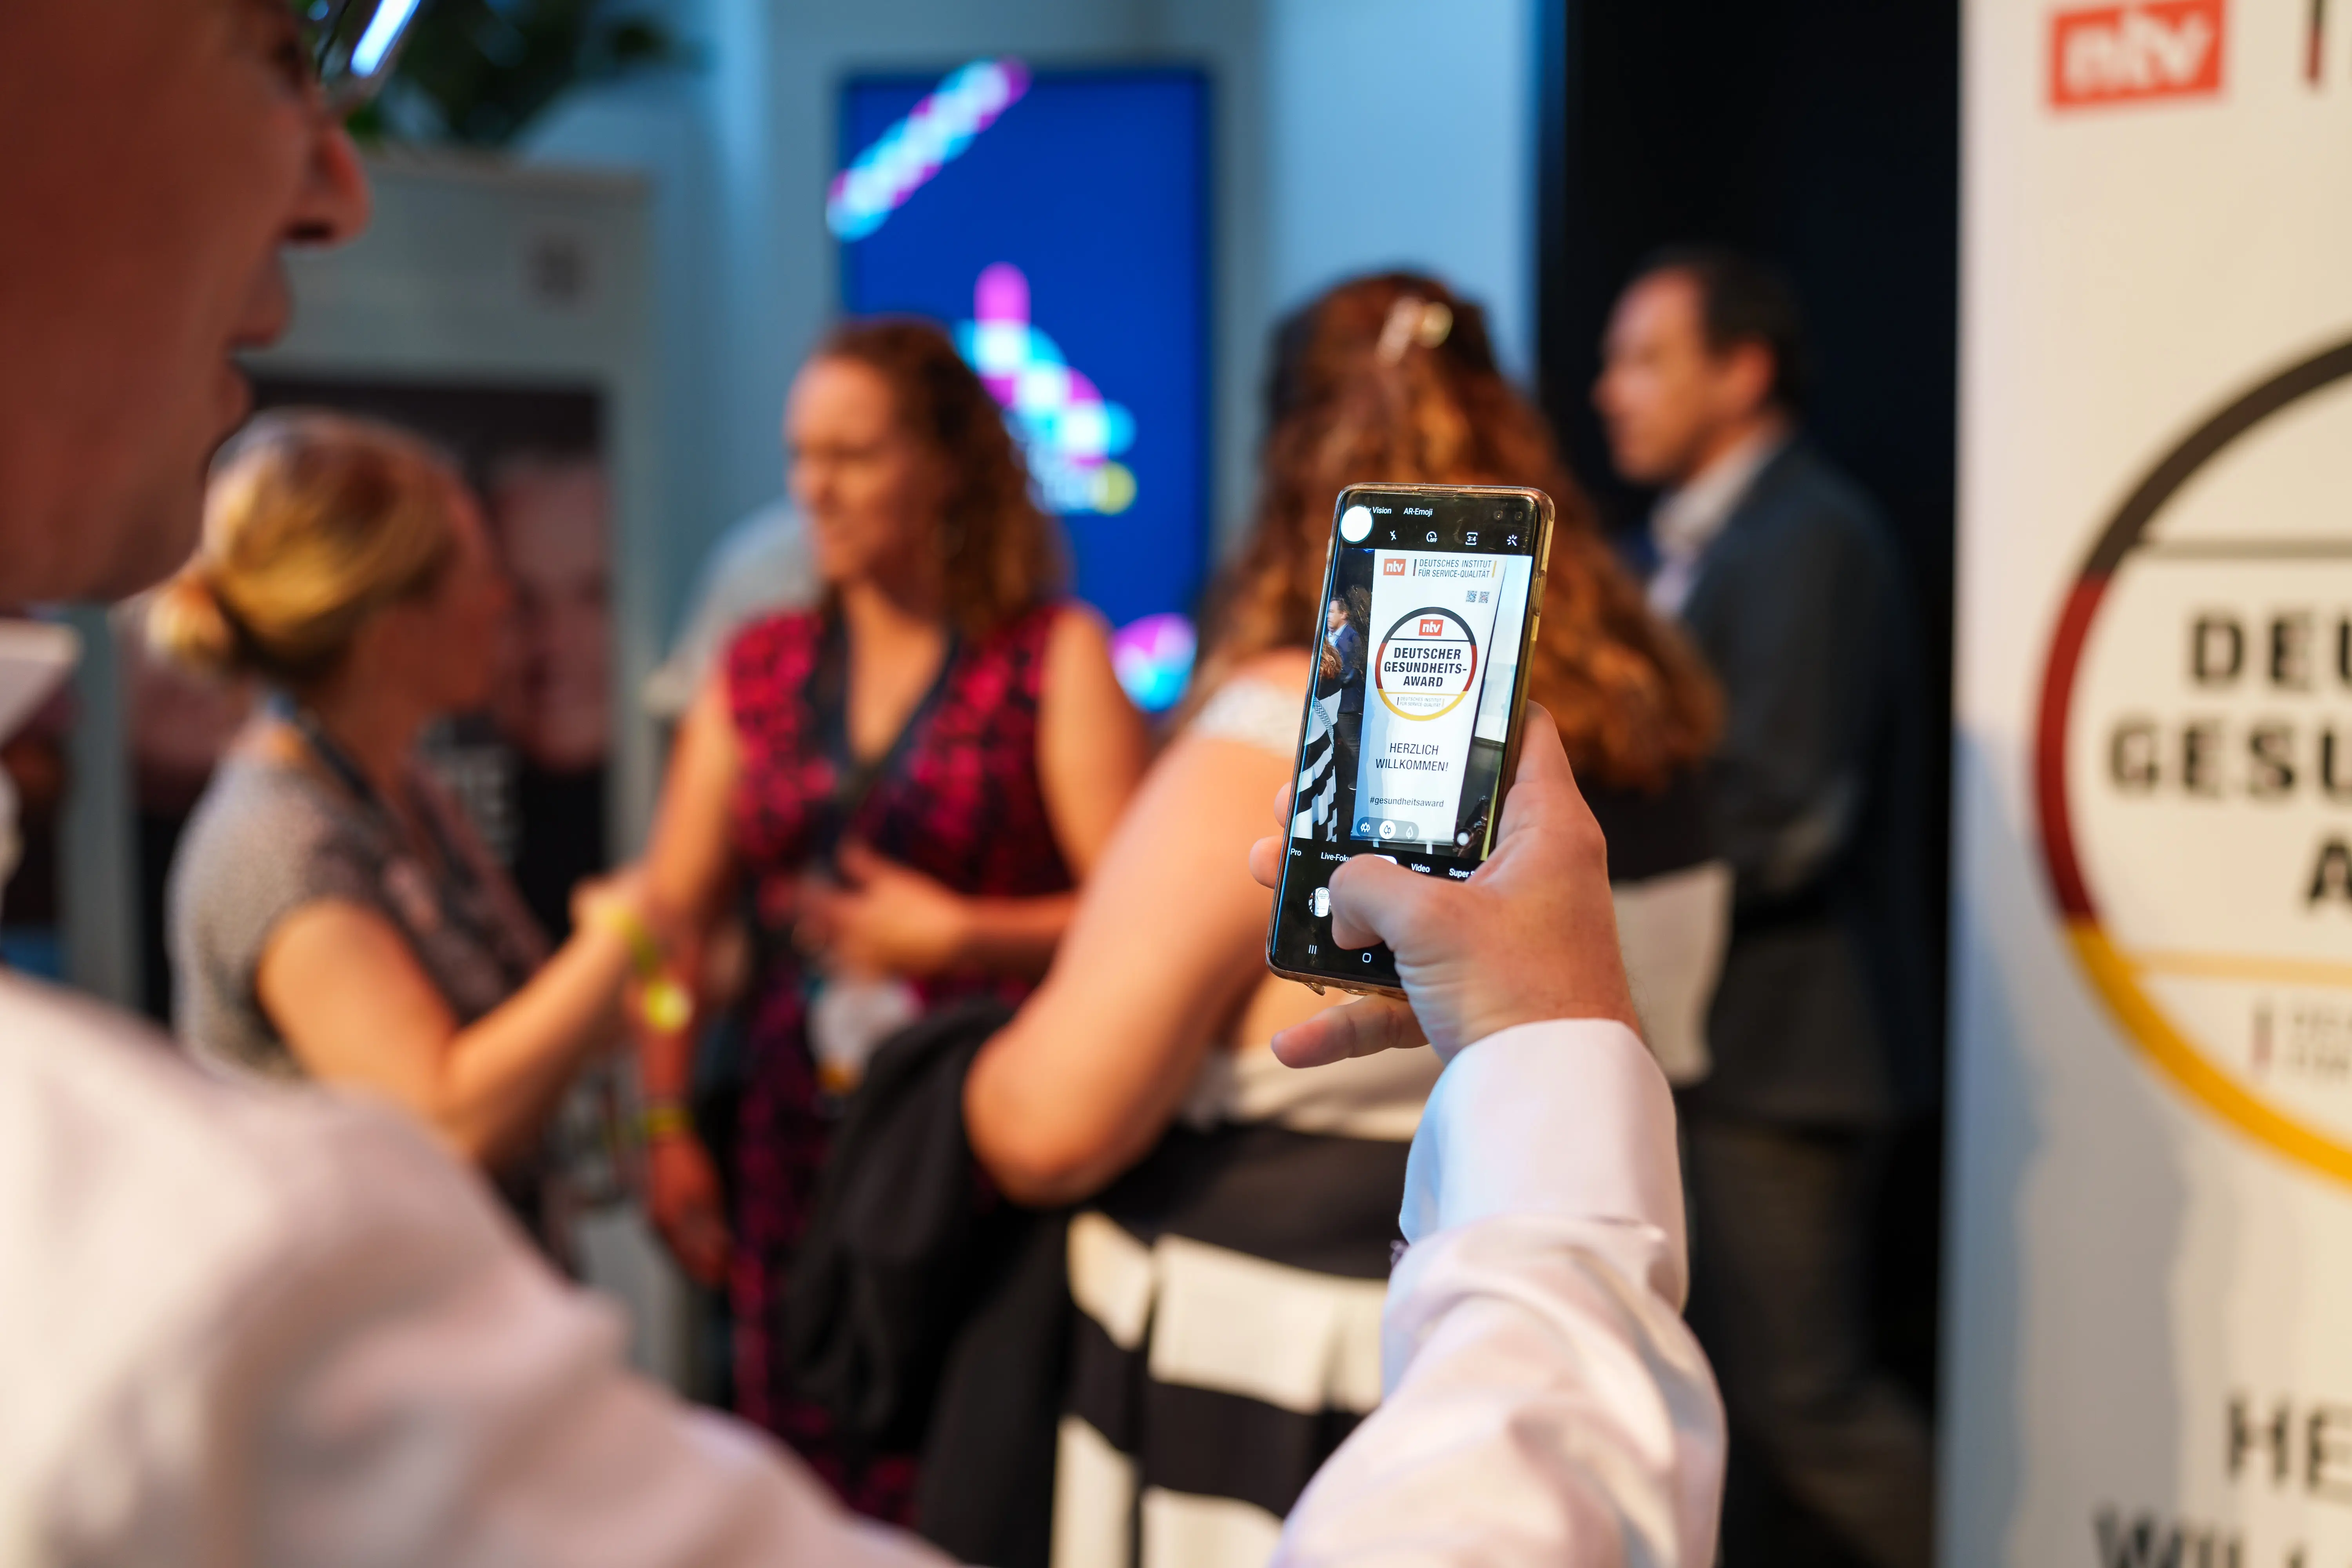 Das Bild zeigt Gäste des Deutschen Gesundheits-Award 2023, im Vordergrund ein Handy, das das Veranstaltungsposter fotografiert. Bei der Veranstaltung wurden die AOK-Angebote Gesundheitsnavigator und Pflegenavigator ausgezeichnet.